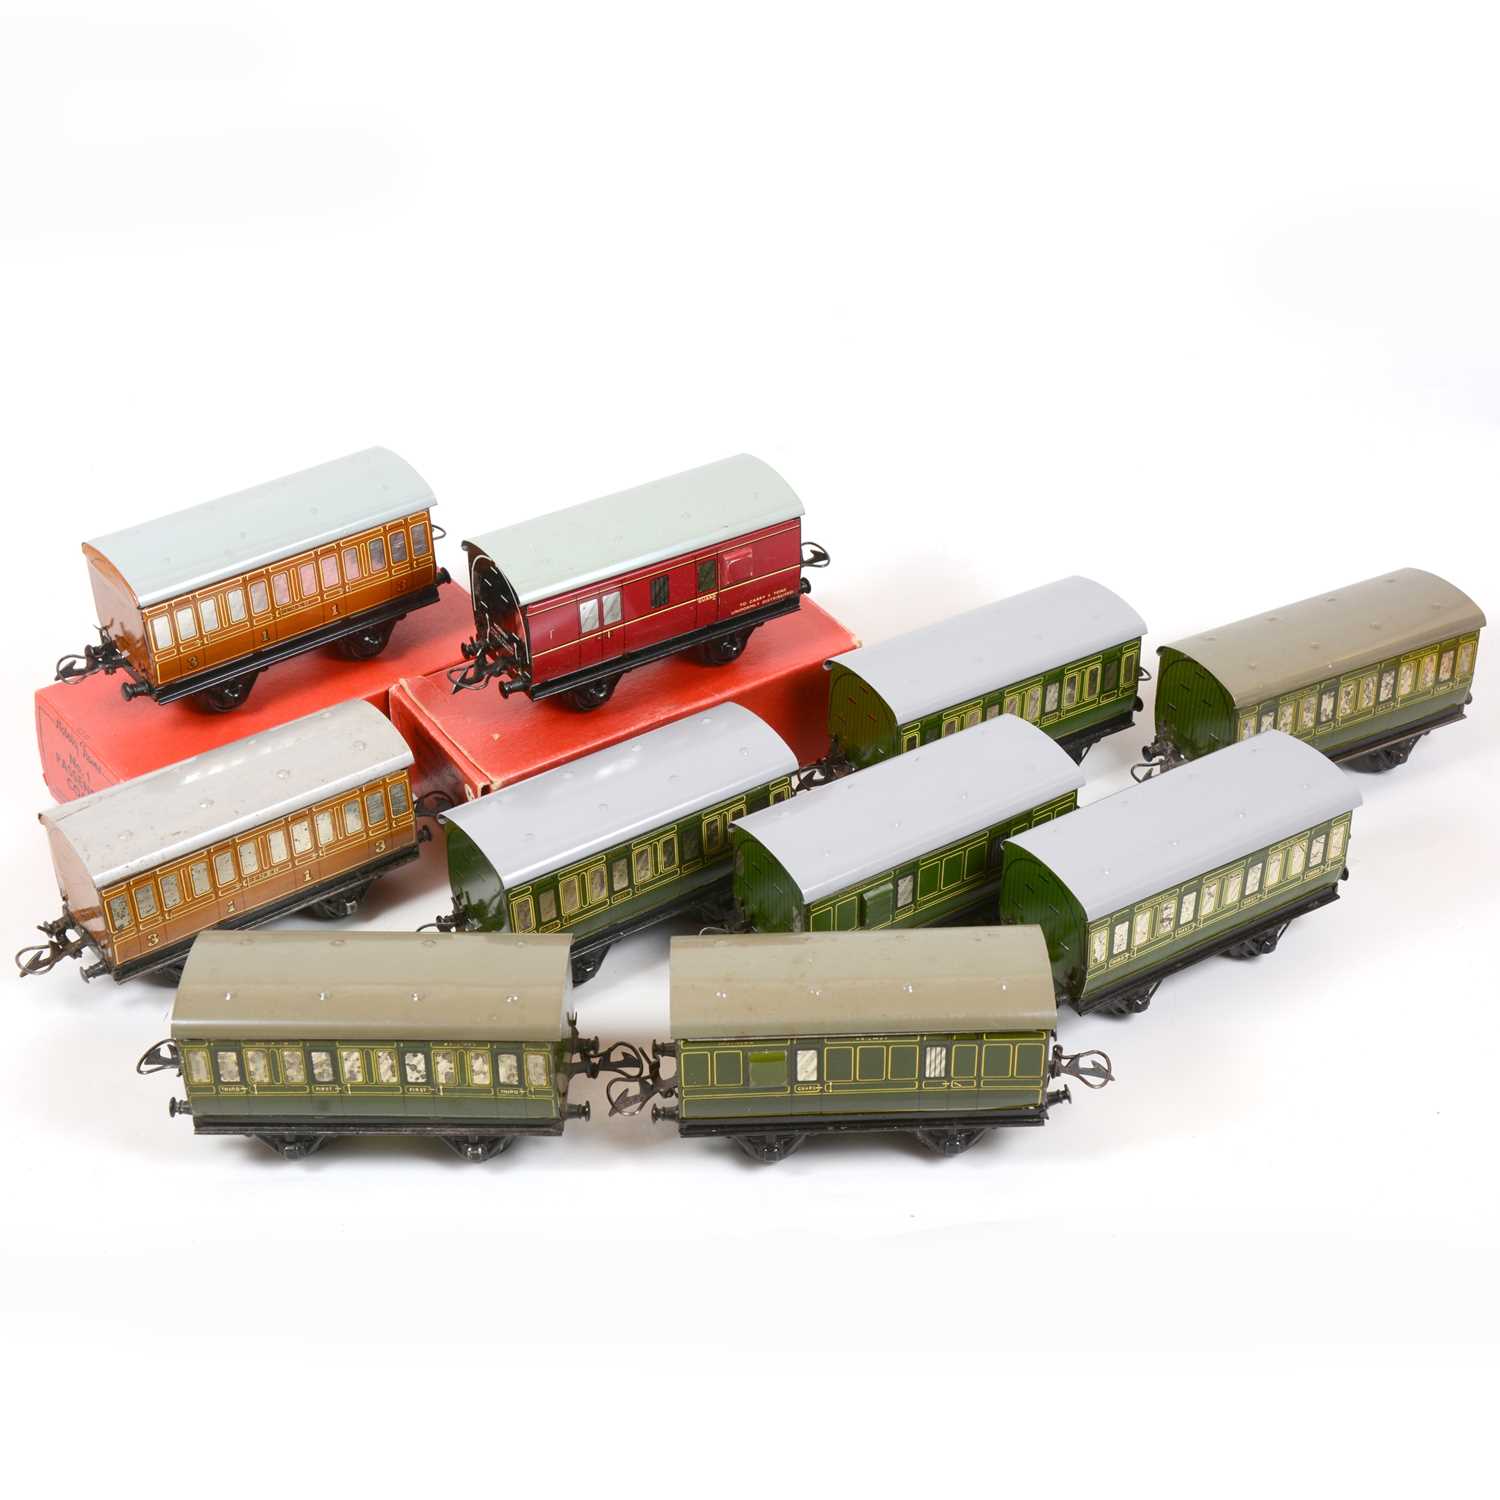 Lot 40 - Ten Hornby O gauge model railway passenger coaches